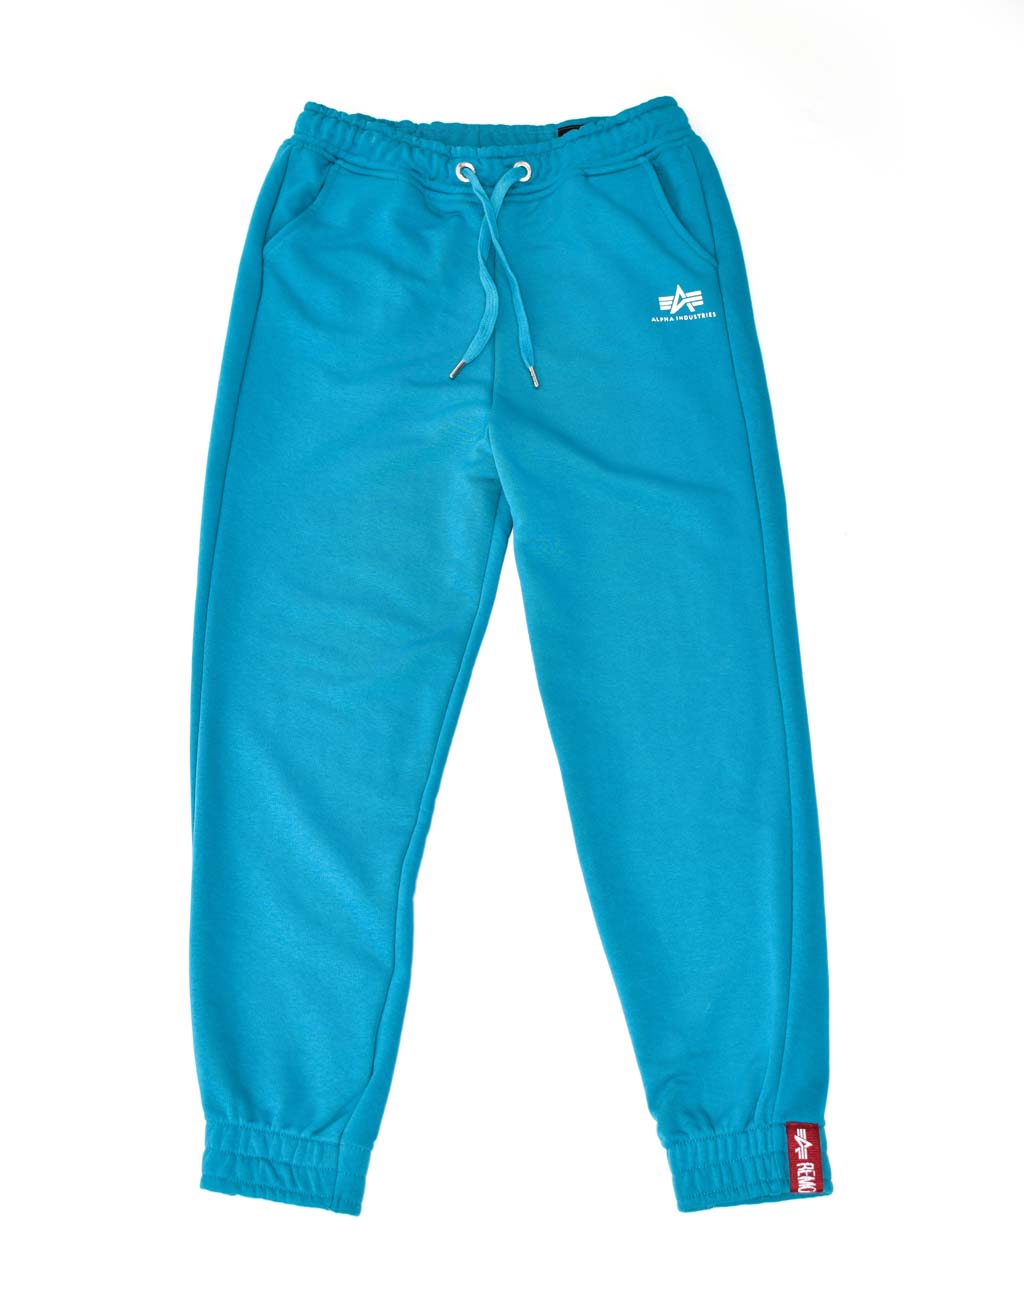 Женские брюки спортивные джоггеры ALPHA INDUSTRIES BASIC JOGGER SL blue lagoon 